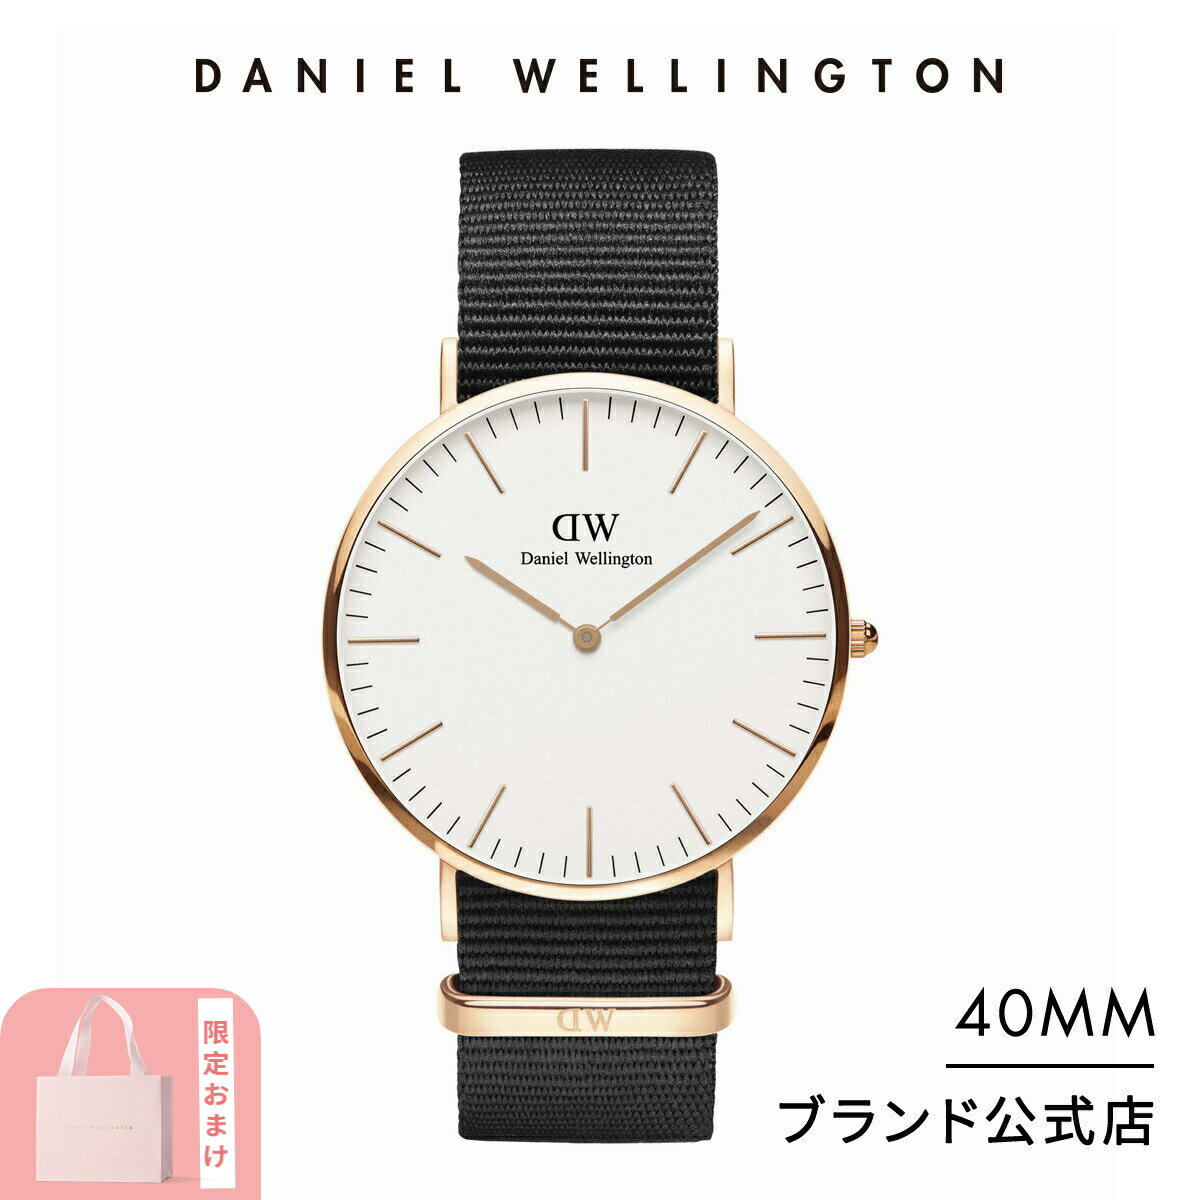 腕時計 メンズ レディース ダニエルウェリントン daniel wellington DW Classic Cornwall 40mm 時計 ブランド 20代 30代 ウォッチ 人気 かっこいい 大人 上品 ビジネス ローズゴールド シルバ…